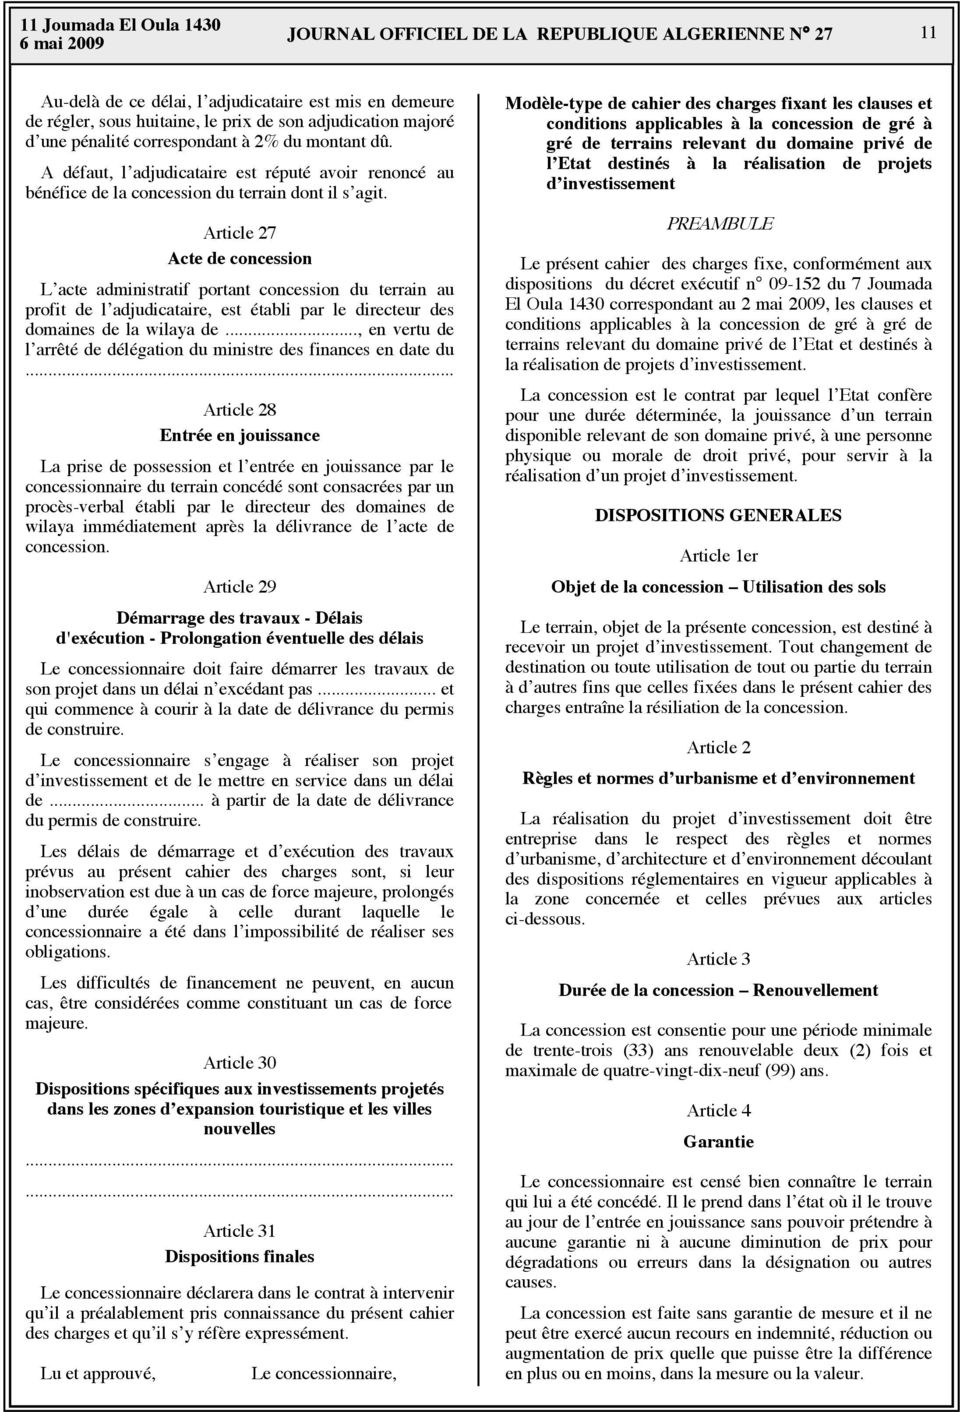 Article 27 Acte de concession L acte administratif portant concession du terrain au profit de l adjudicataire, est établi par le directeur des domaines de la wilaya de.